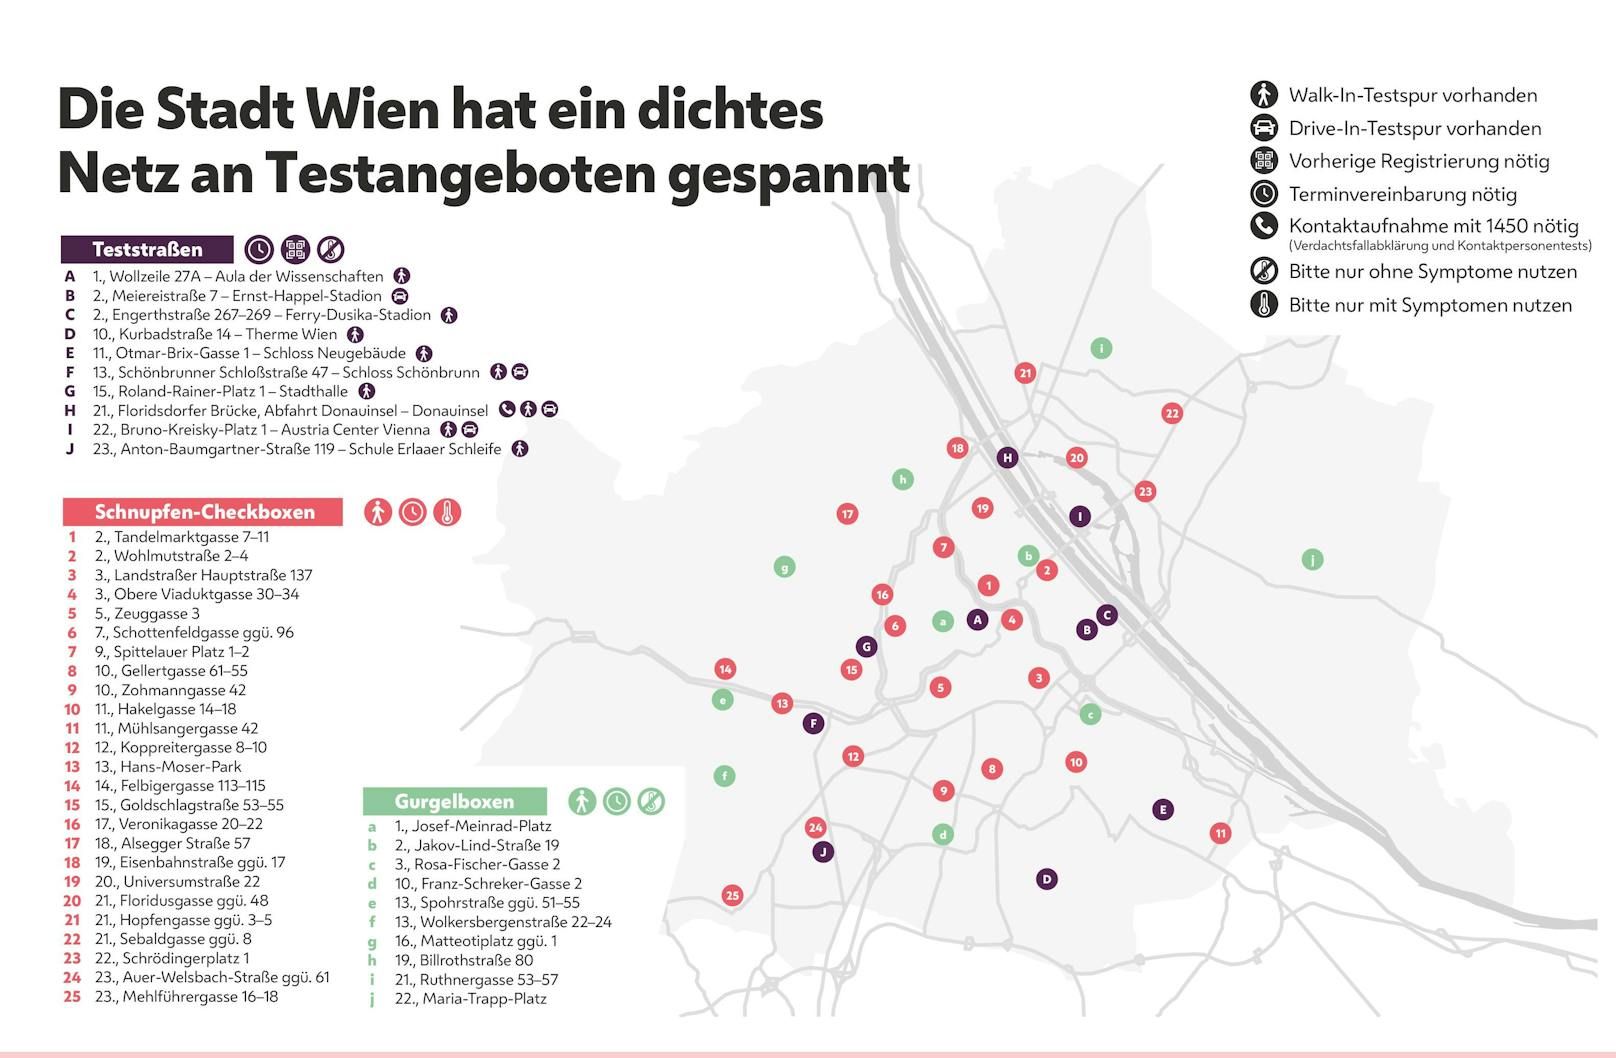 Die Stadt Wien baut ihr Netz an Testangeboten aus: Zu den zehn Teststraßen und 25 "Schnupfen-Boxen" kommen nun auch zehn "Gurgelboxen" dazu. Alle Standorte finden sich auch <a href="https://coronavirus.wien.gv.at/testangebote">hier</a>.